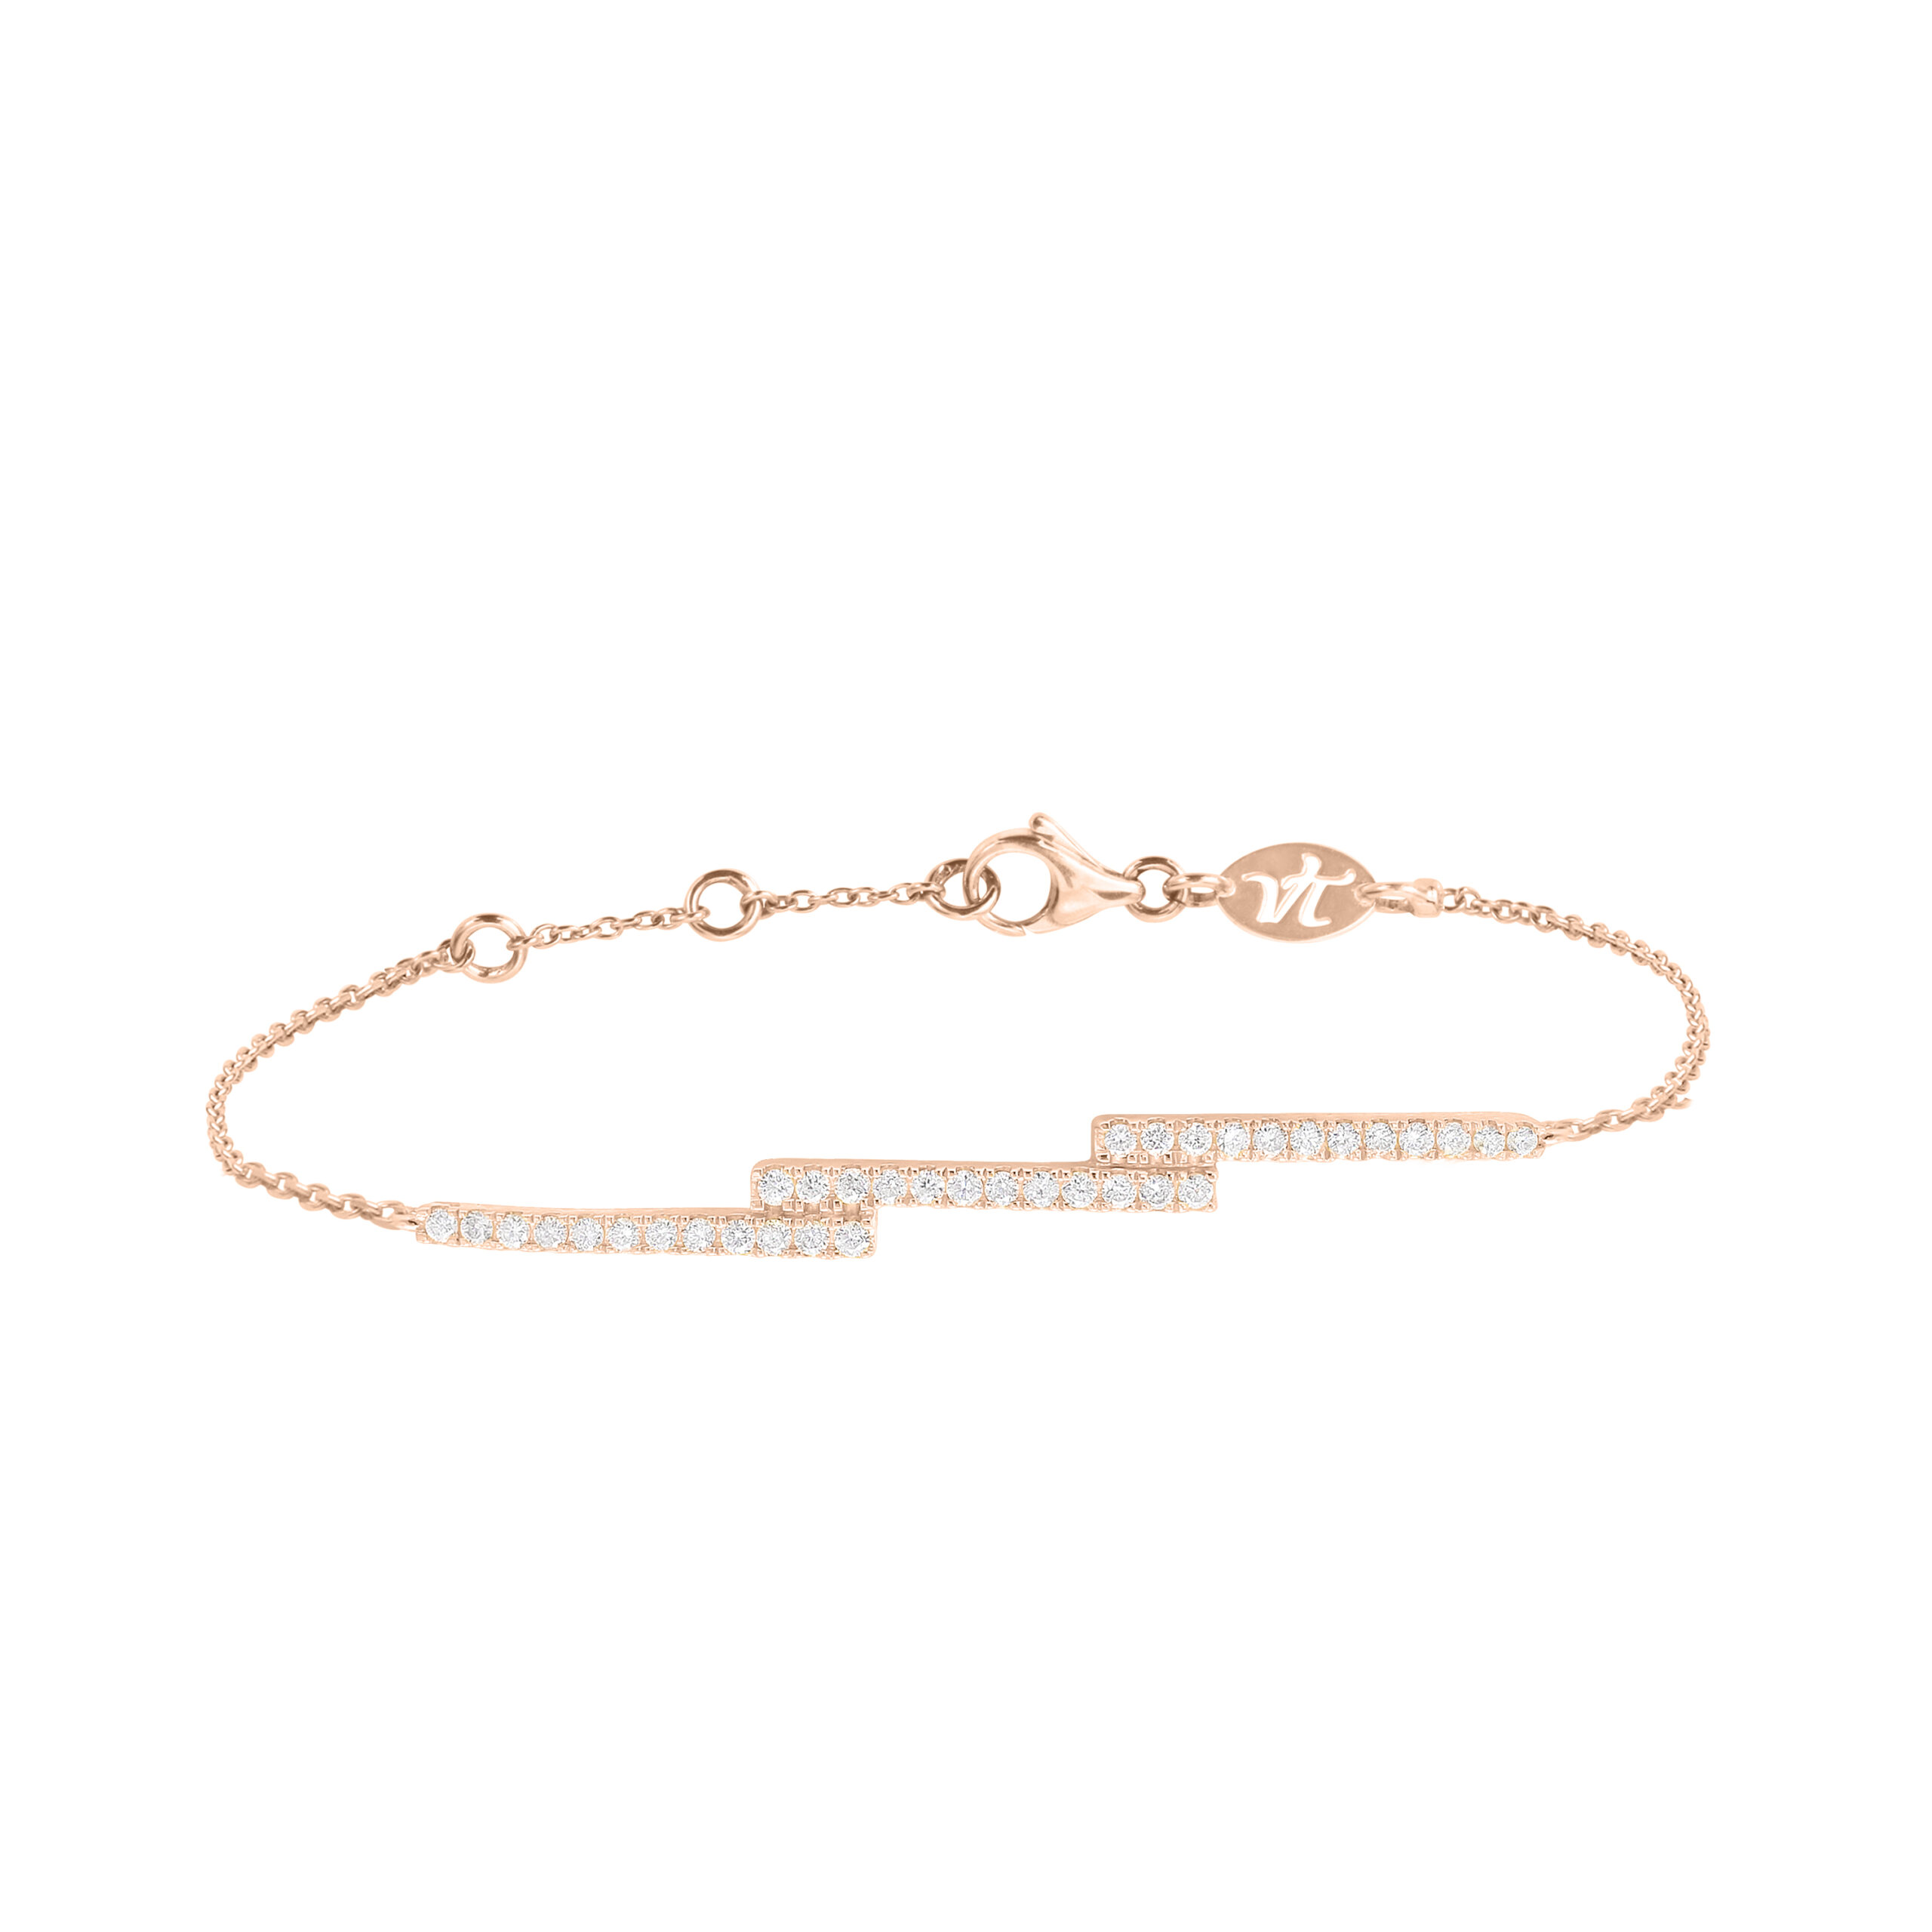 Ce bracelet fin et tendance en or rose et lignes de diamants à superposer ou à accumuler est prisé par les stars et célébrités. Ce bijou de joaillerie fine made in France est un cadeau idéal pour l'anniversaire d'une femme.